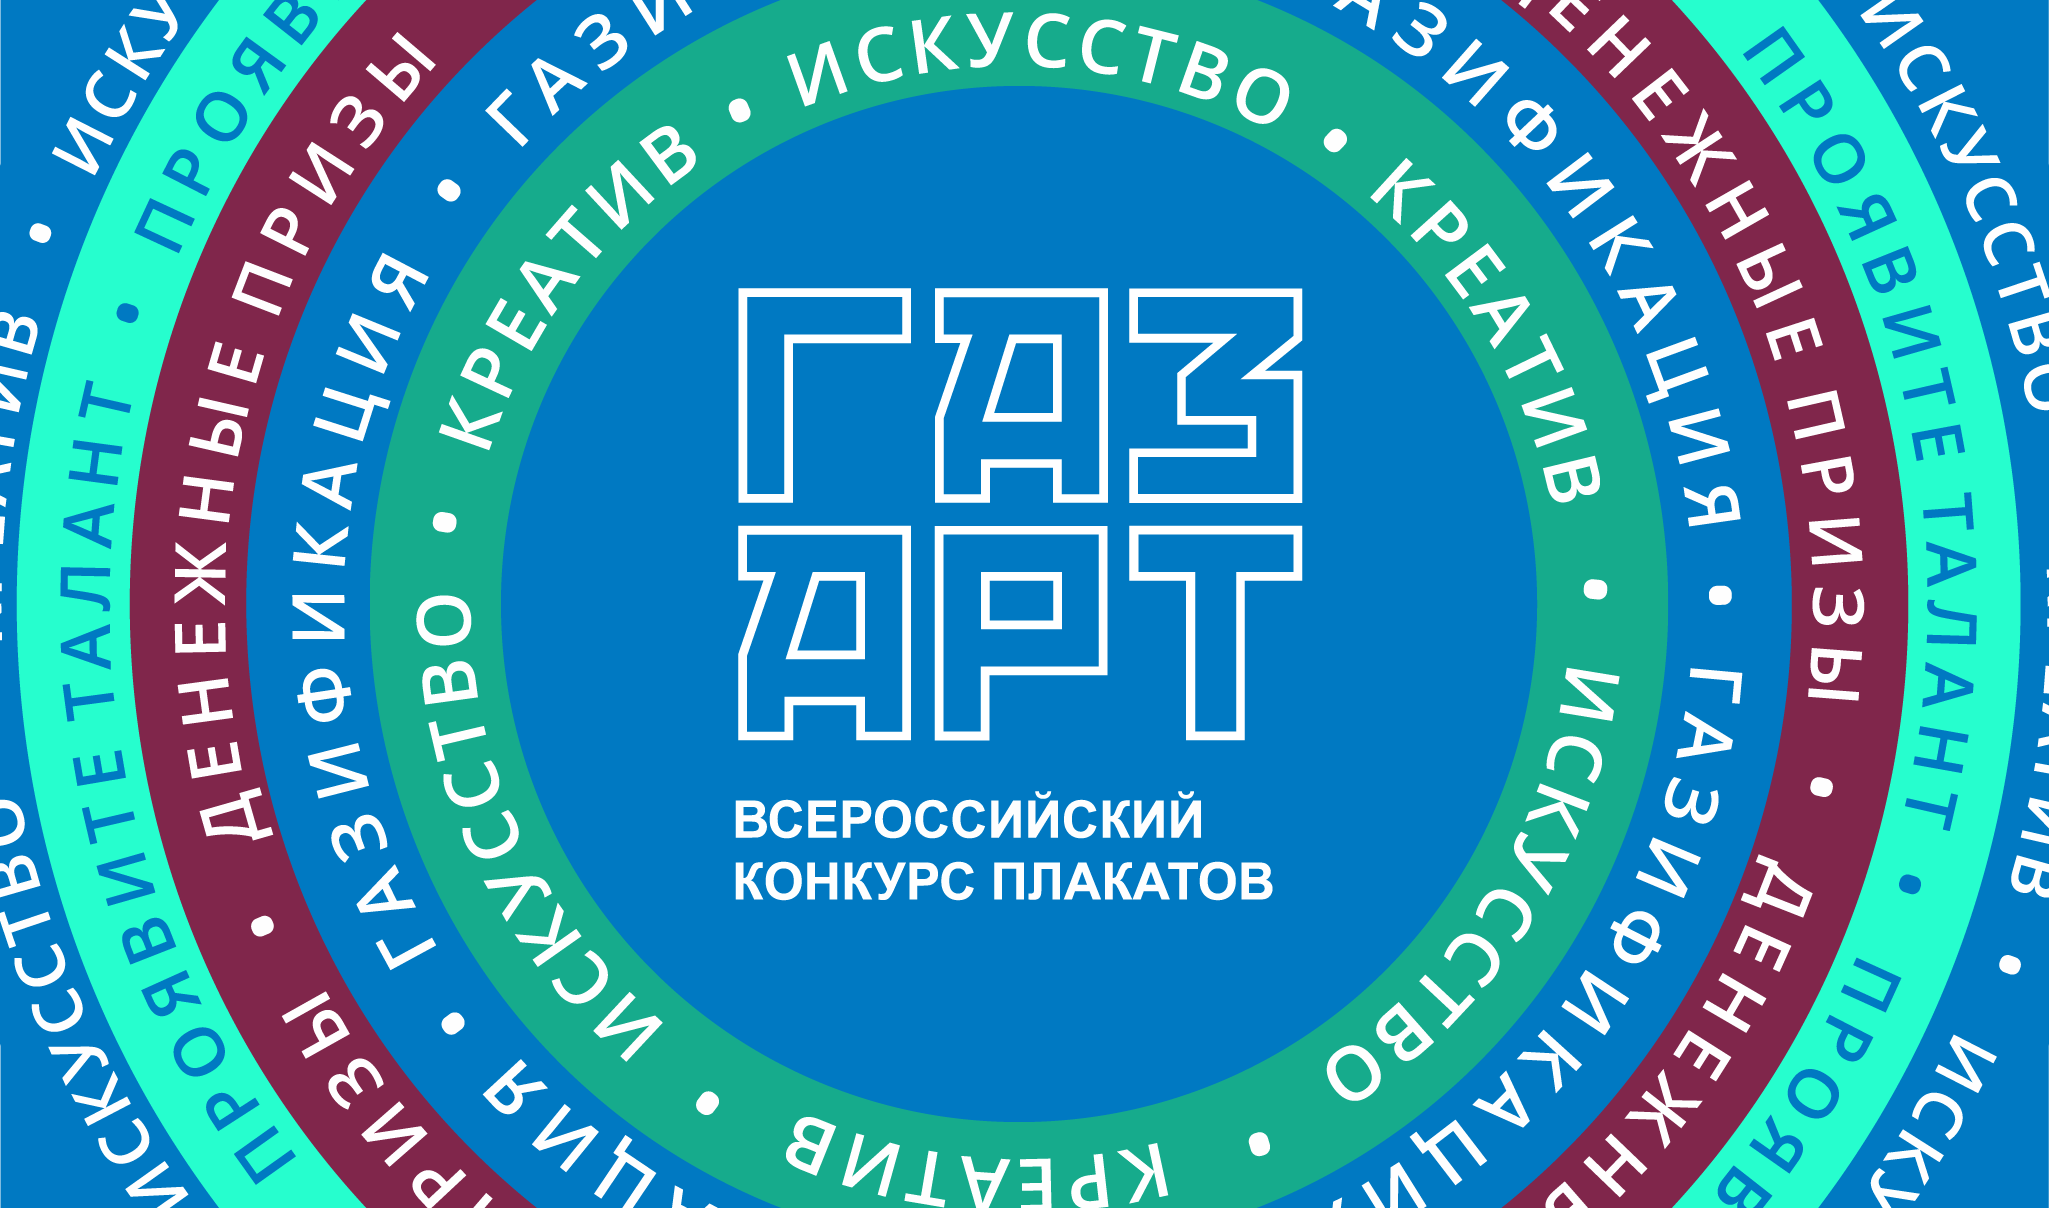 Всероссийский конкурс плакатов «Газпром межрегионгаз»